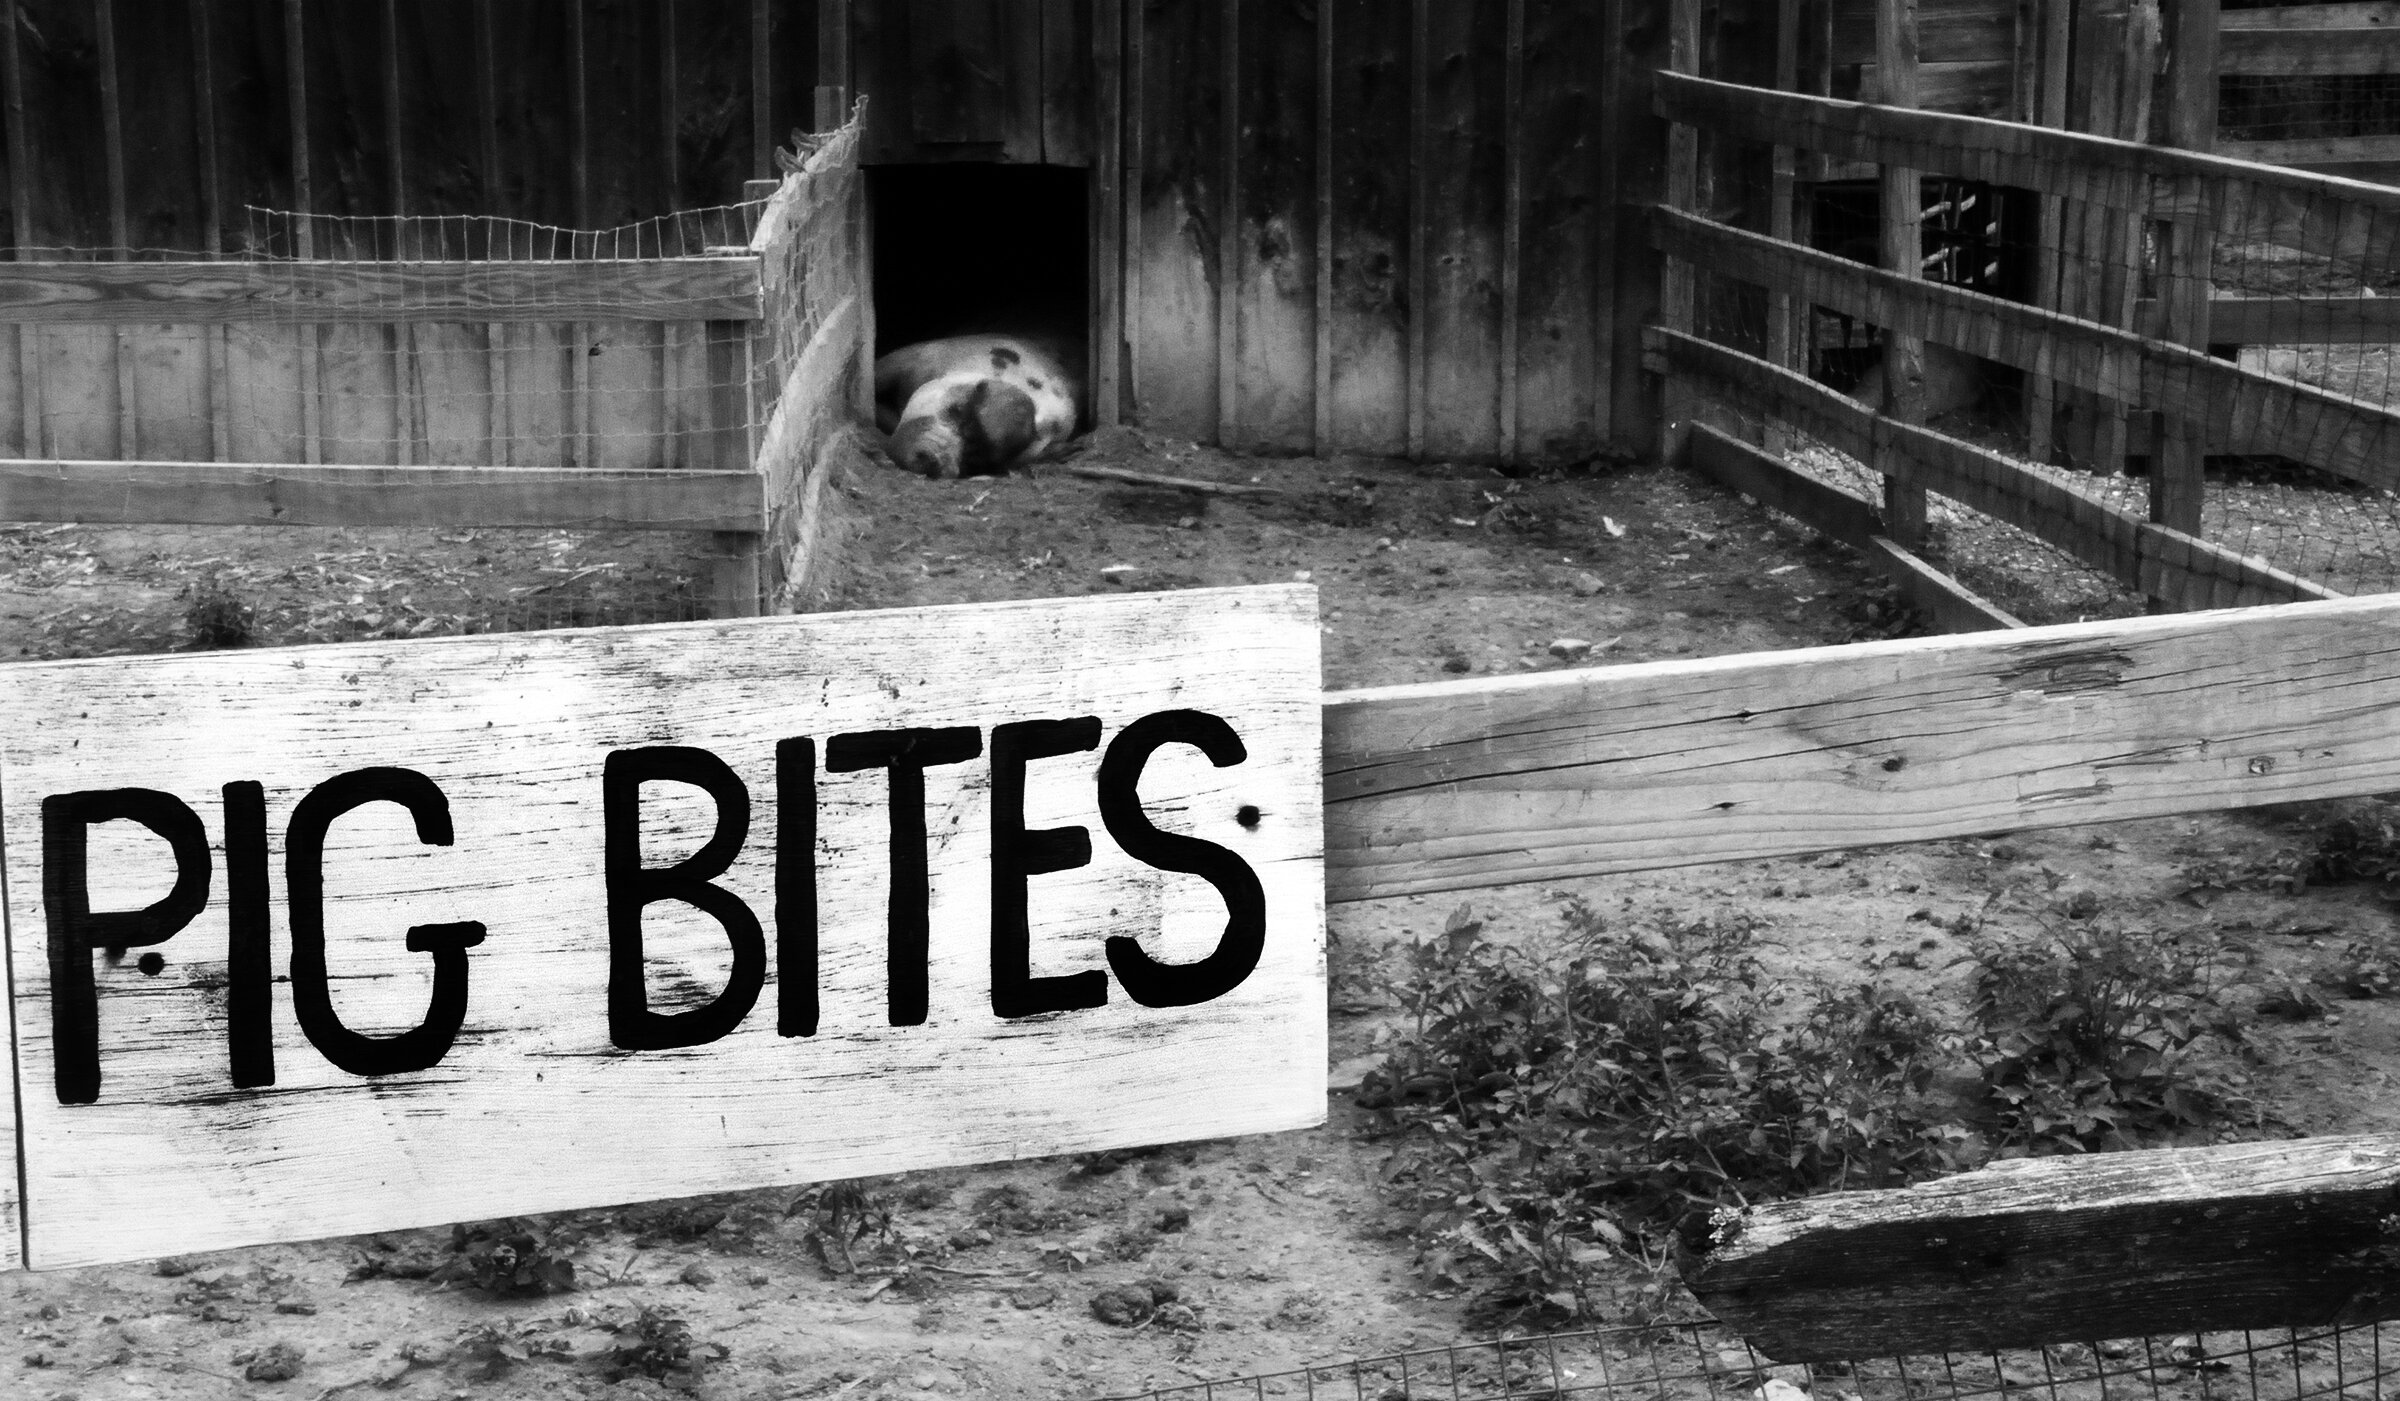 Pig Bites